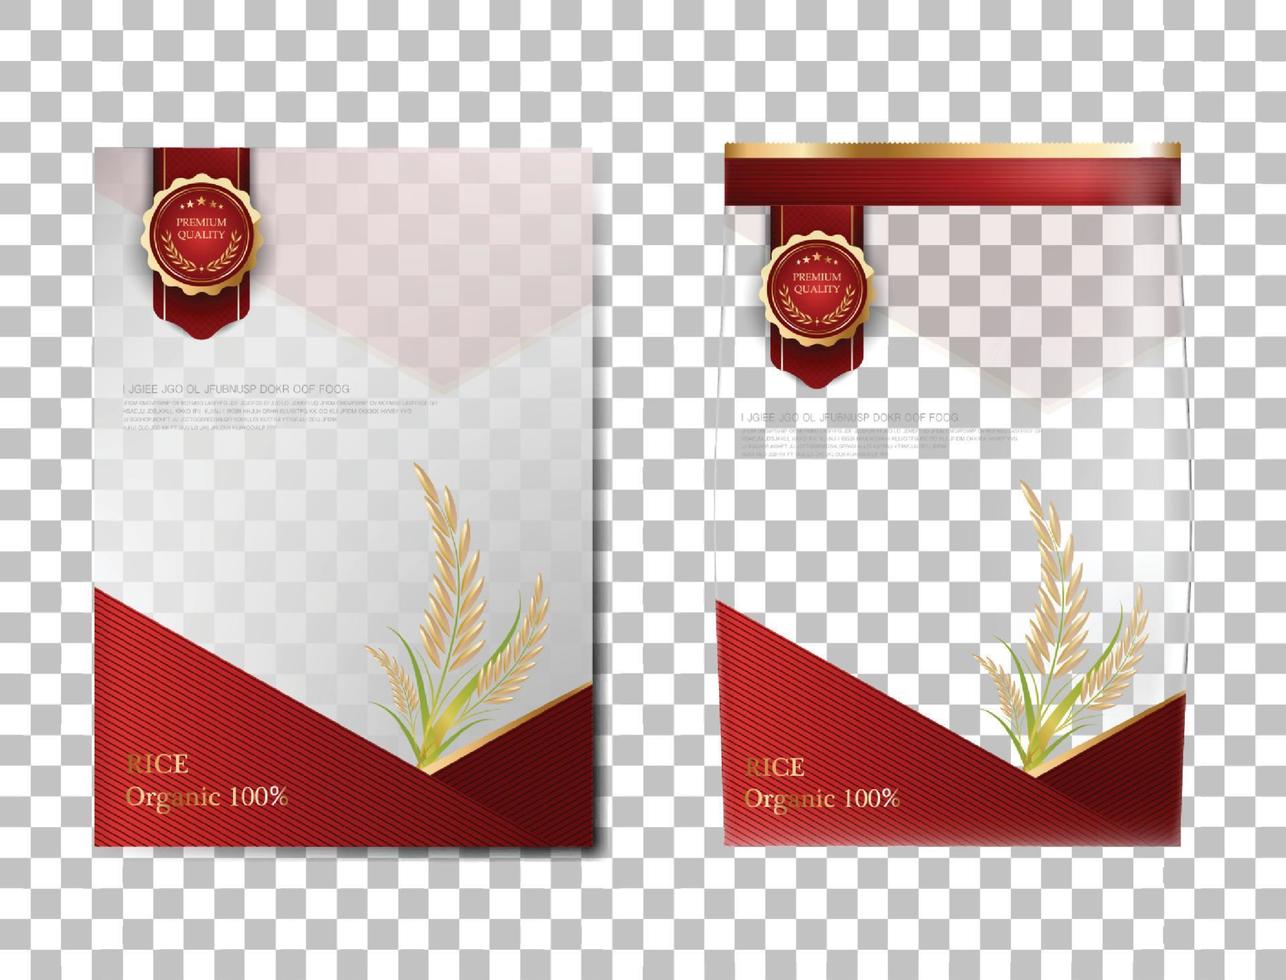 pacchetto di riso prodotti alimentari thailandesi, banner in oro rosso e modello di poster disegno vettoriale riso.